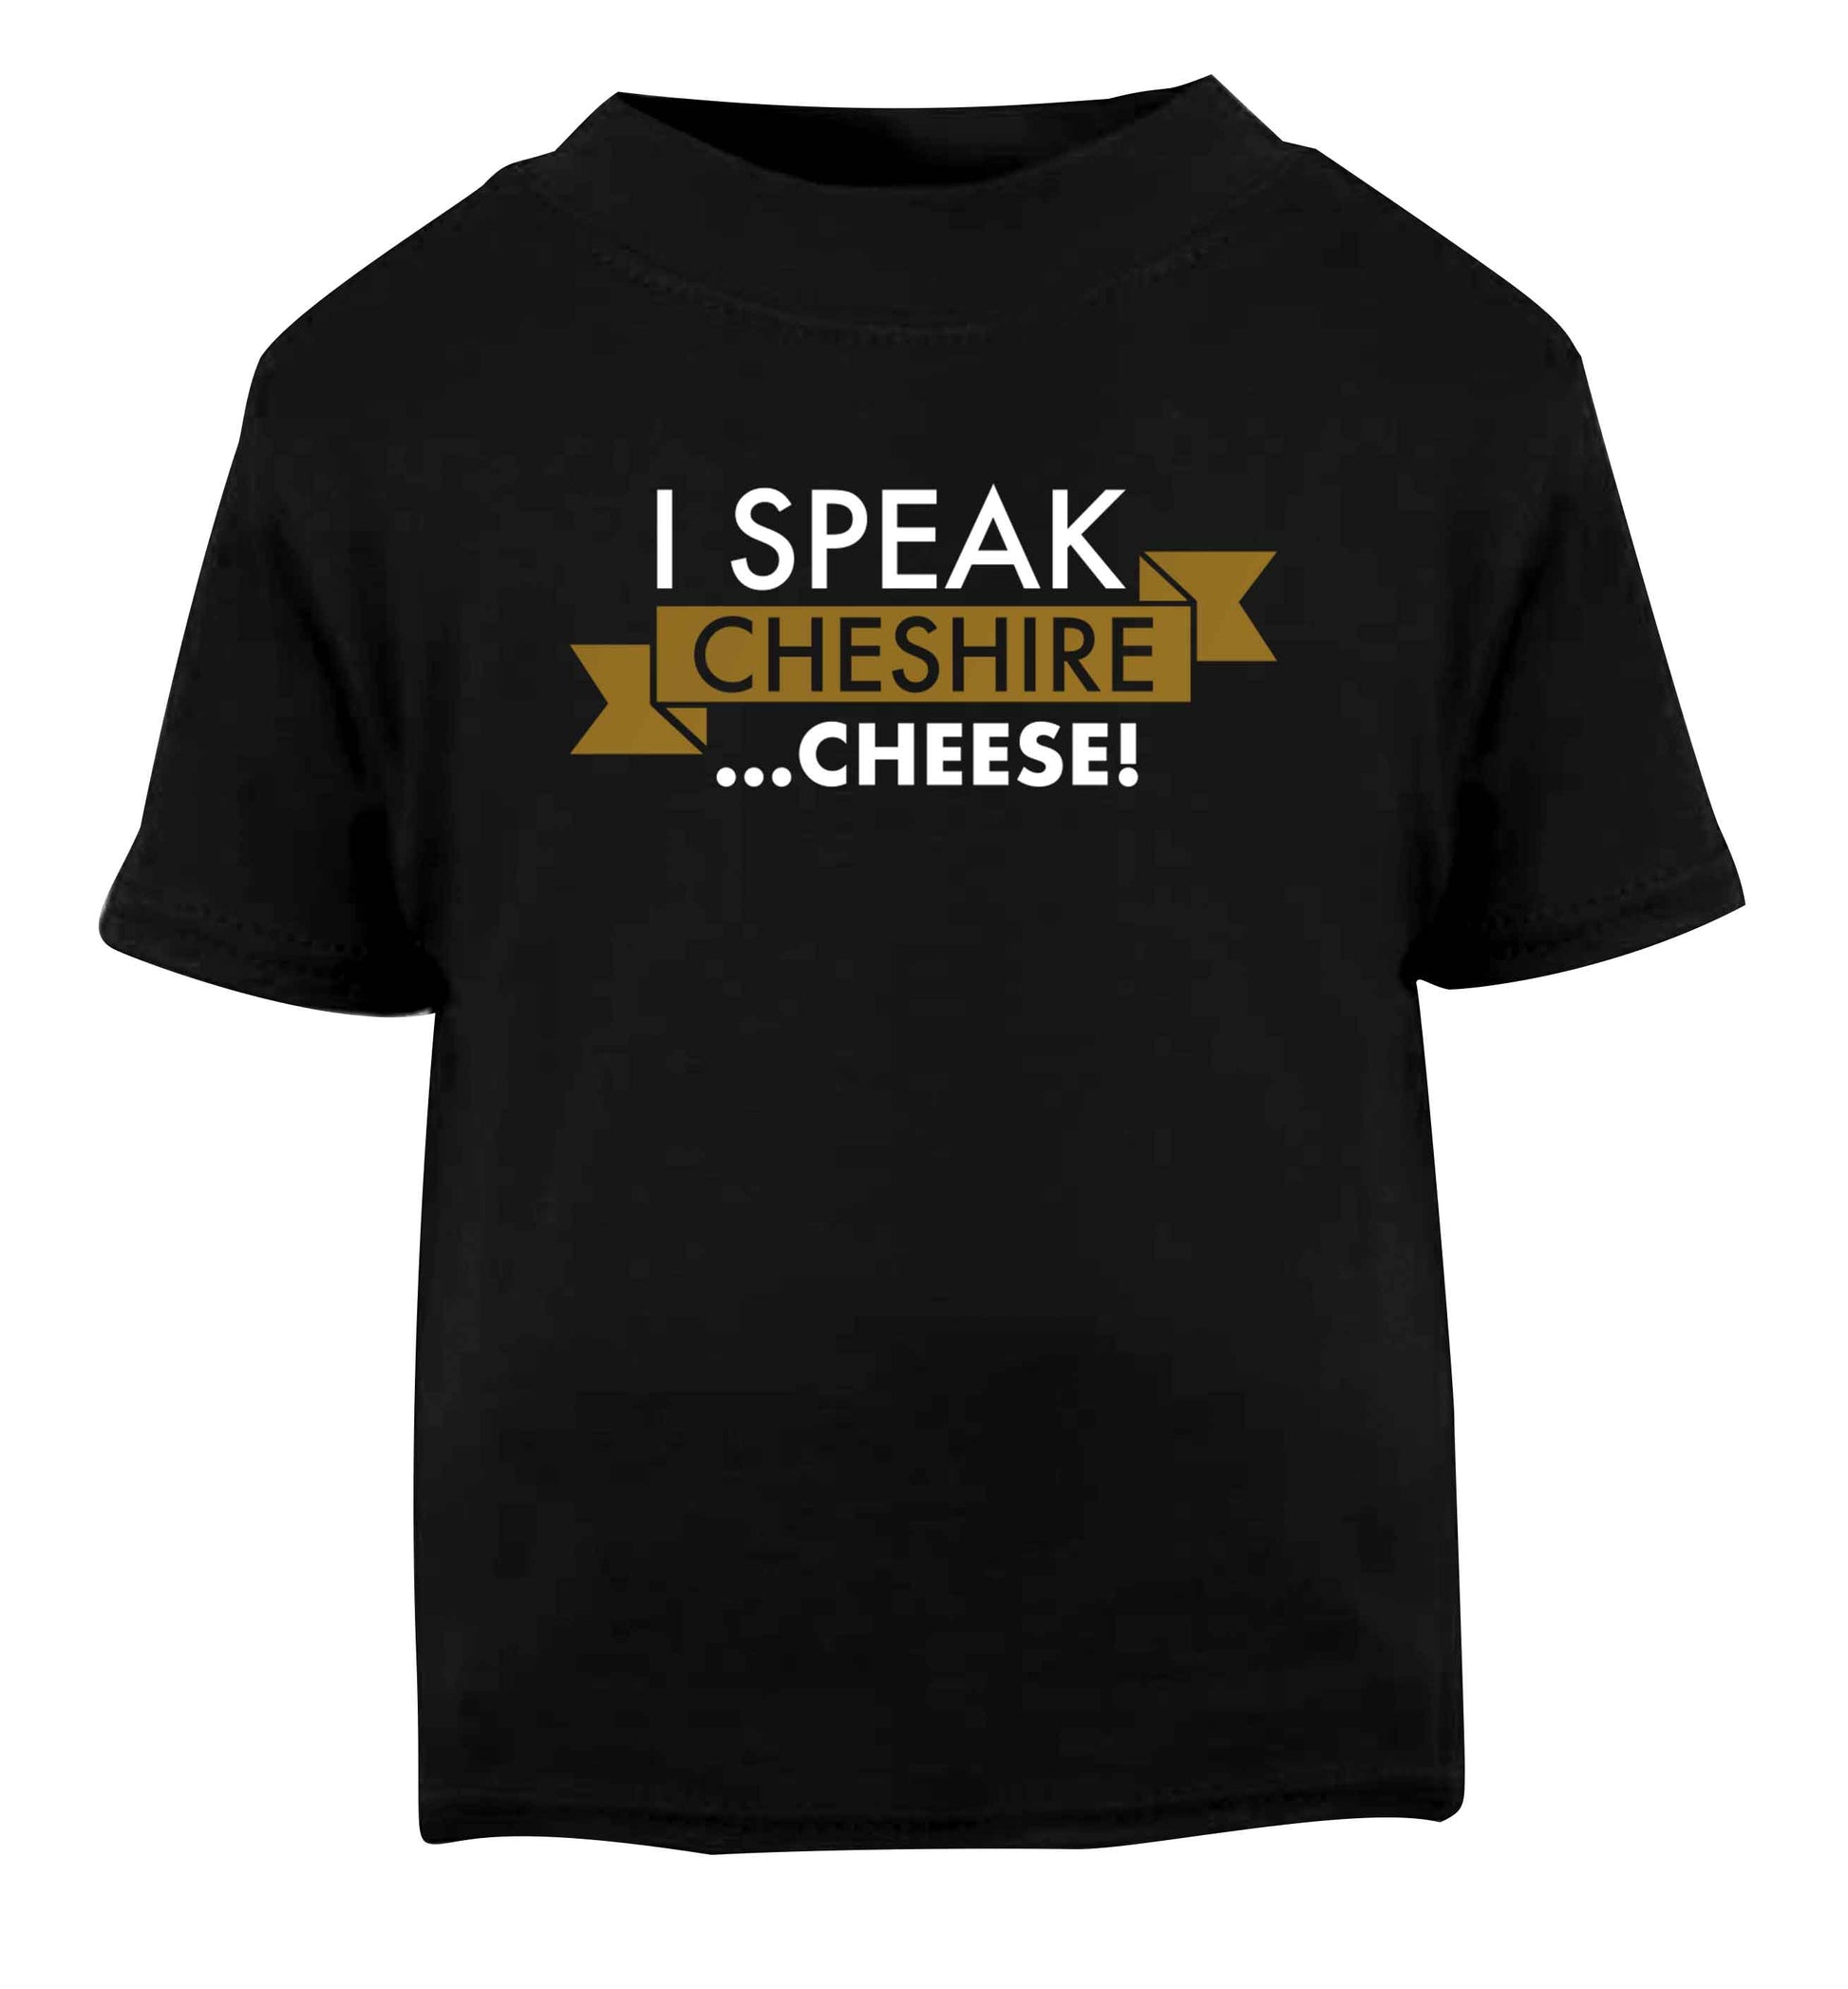 I speak Cheshire cheese Black Baby Toddler Tshirt 2 years